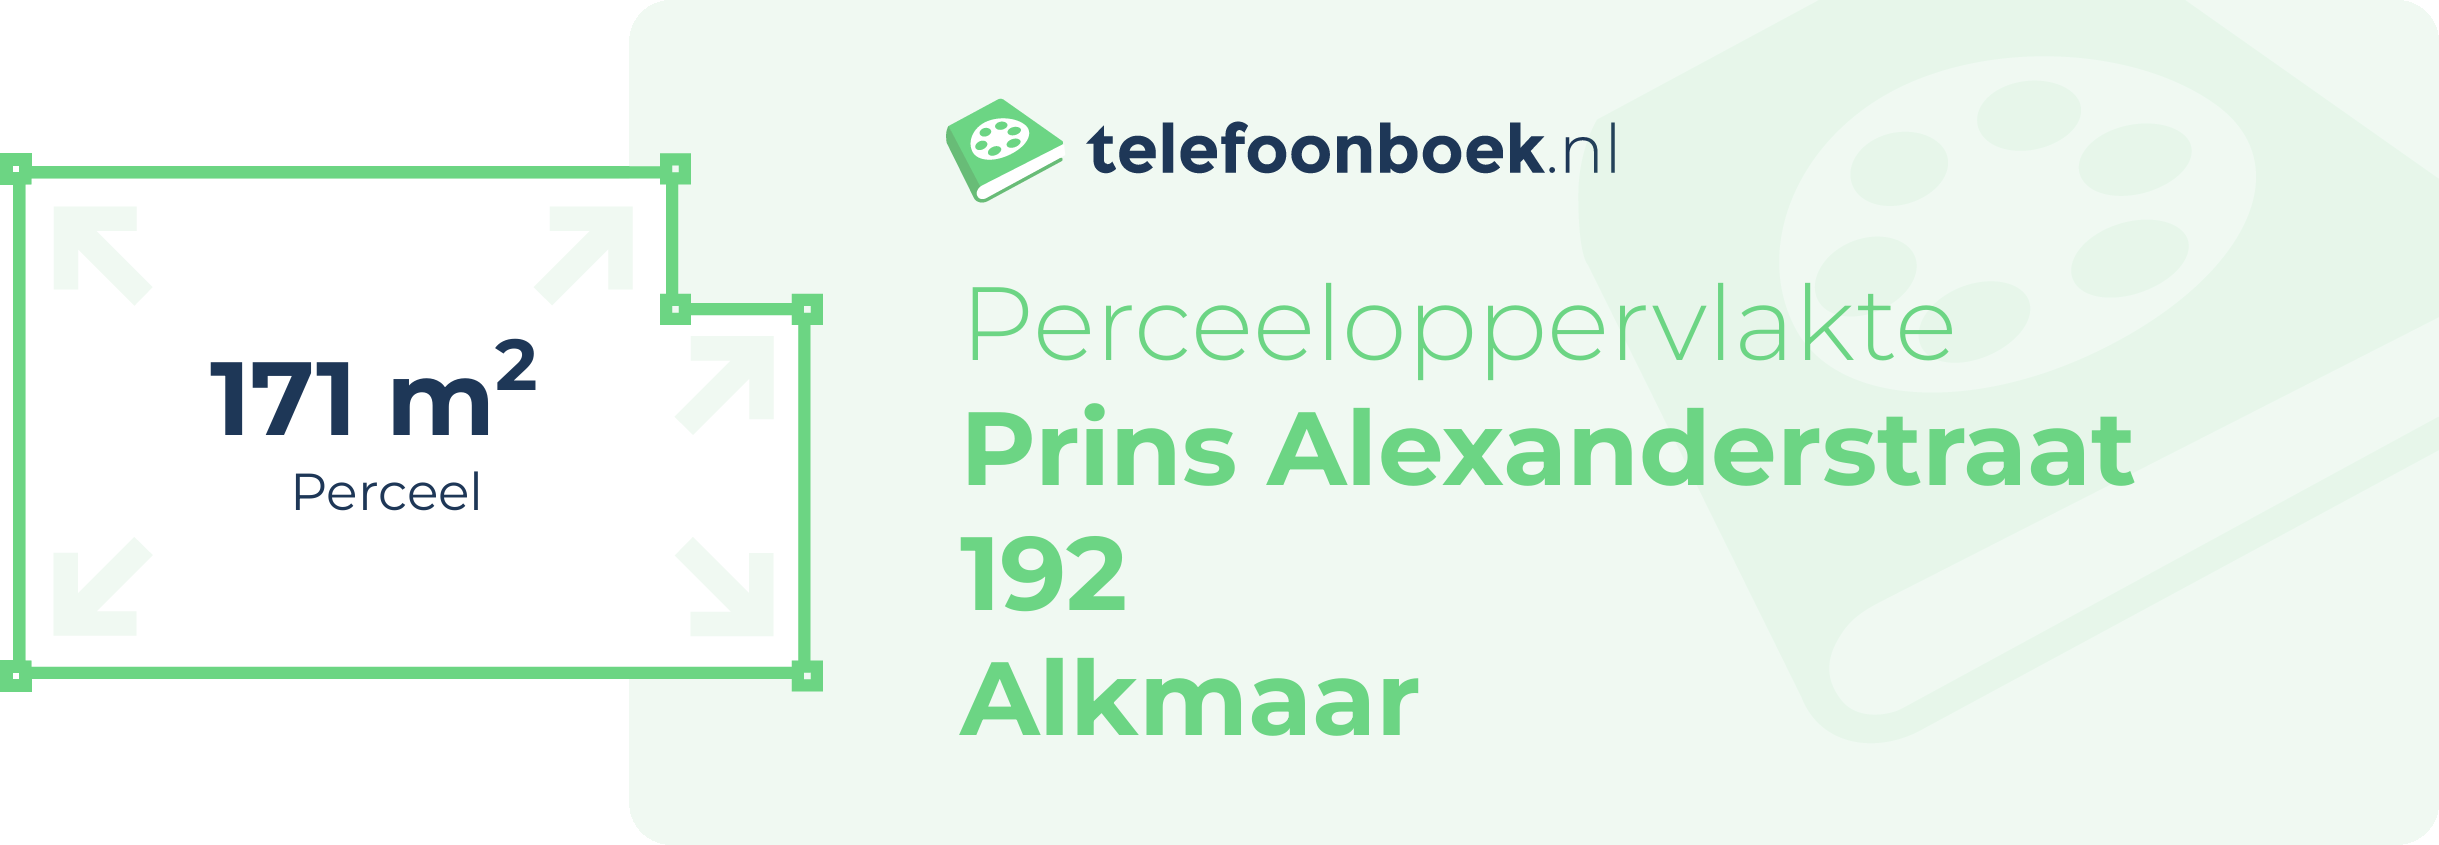 Perceeloppervlakte Prins Alexanderstraat 192 Alkmaar